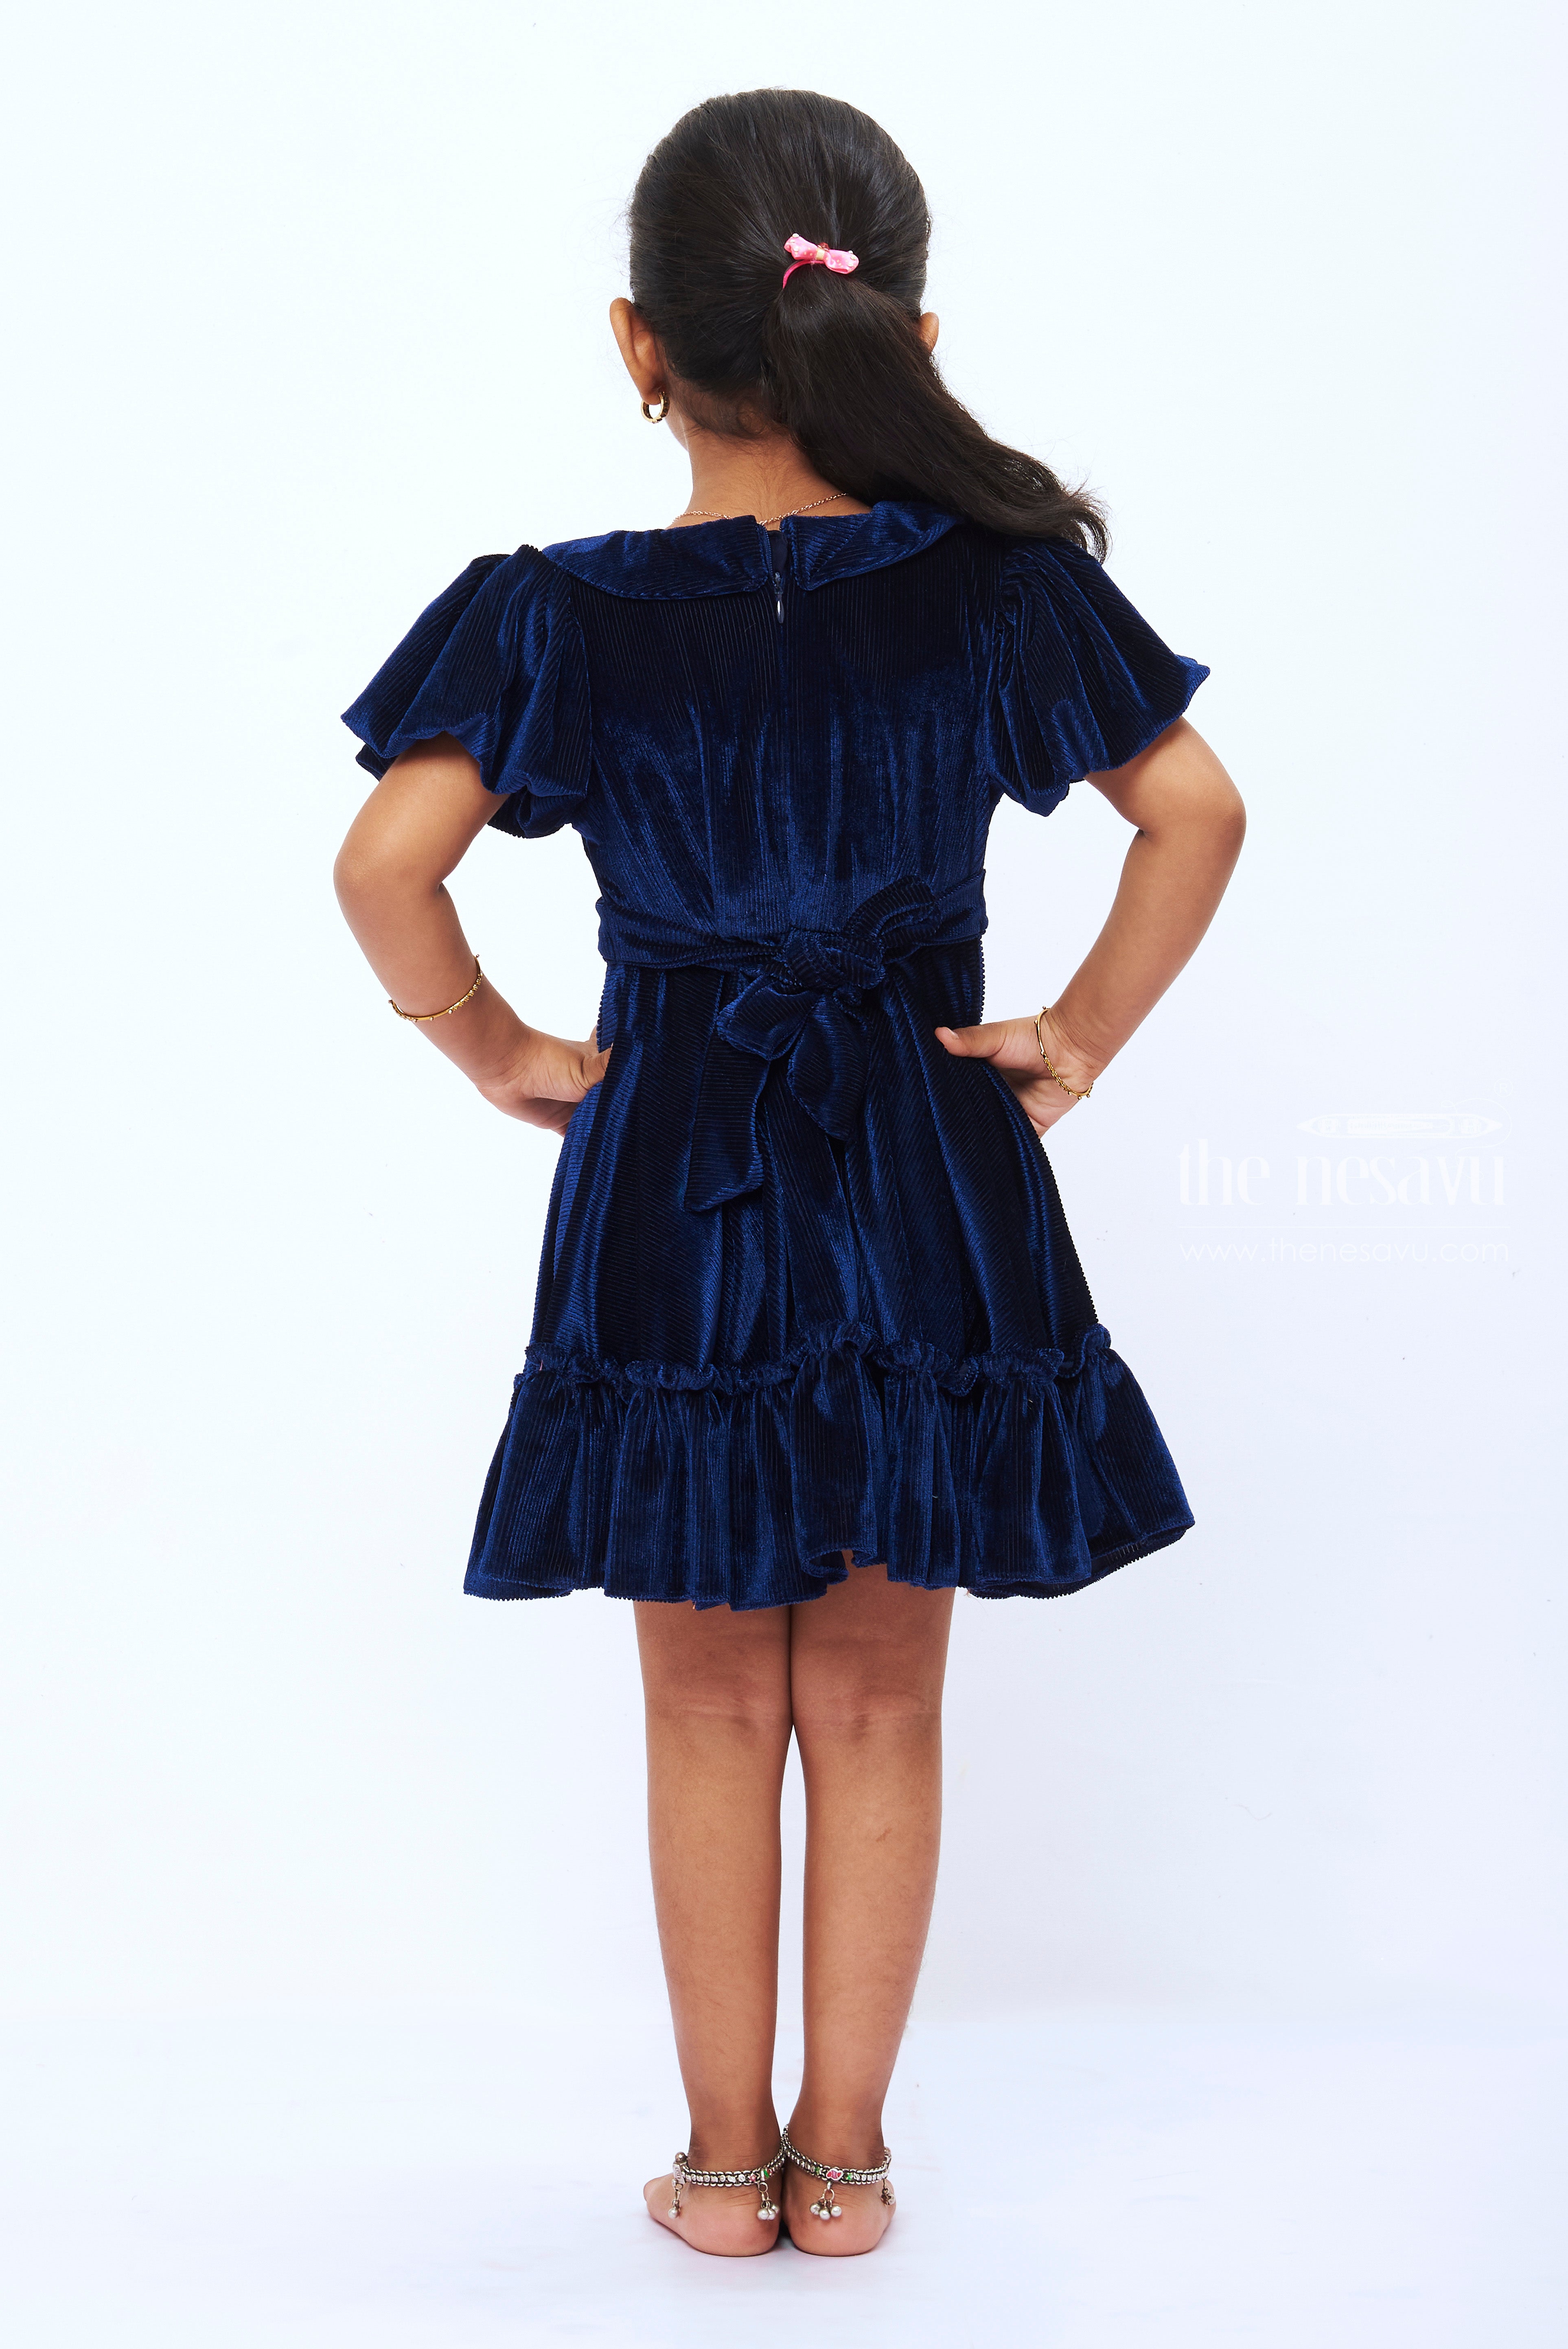 Beau KiD - Girls Velvet Dress & Bag Set | Childrensalon